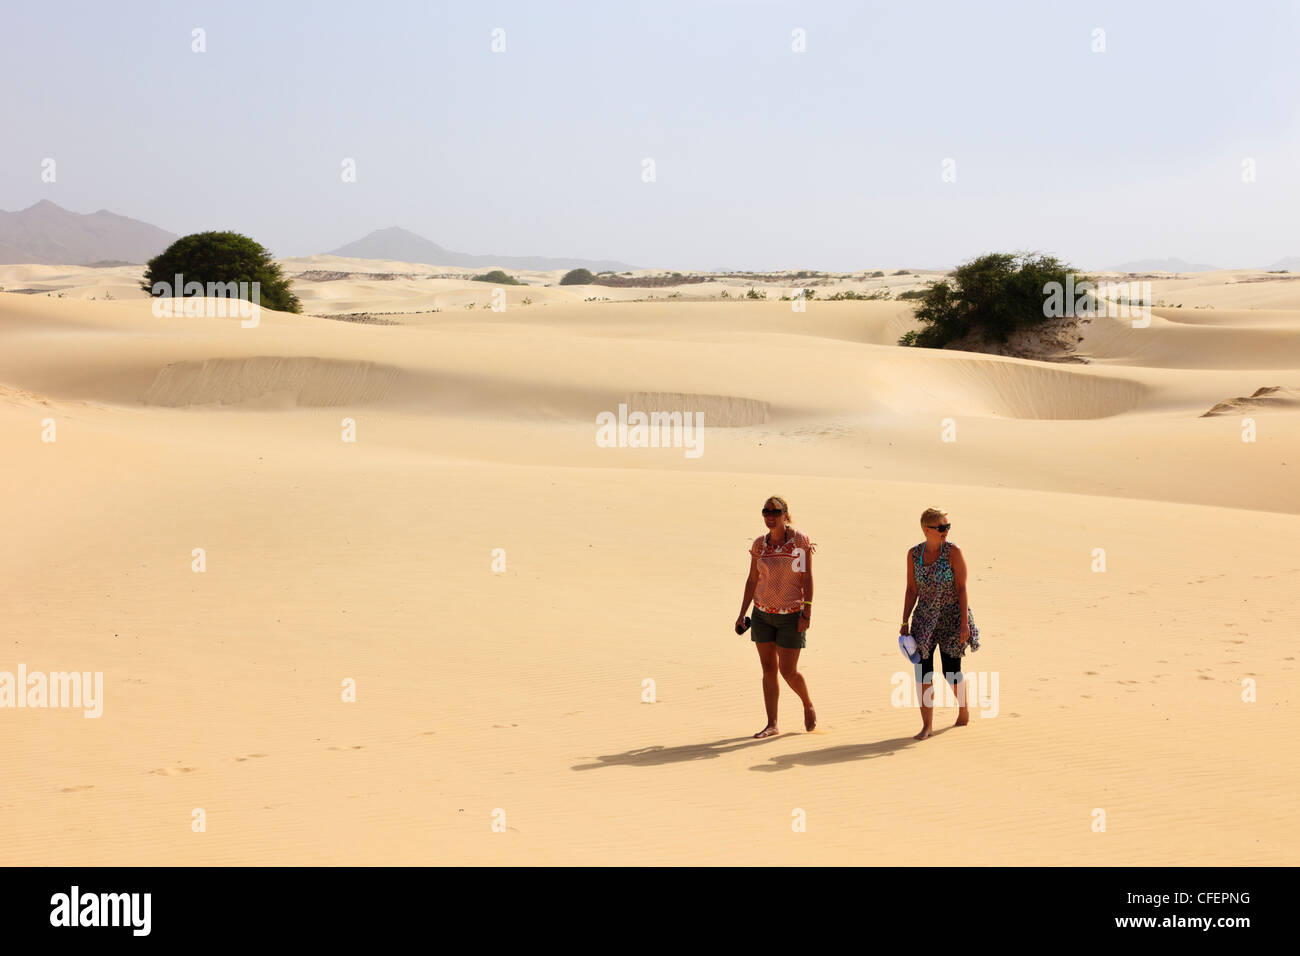 Vue de deux touristes marchant pieds nus sur des dunes de sable du désert vide. Deserto de Viana, Boa Vista, Cap Vert, Afrique du Sud Banque D'Images